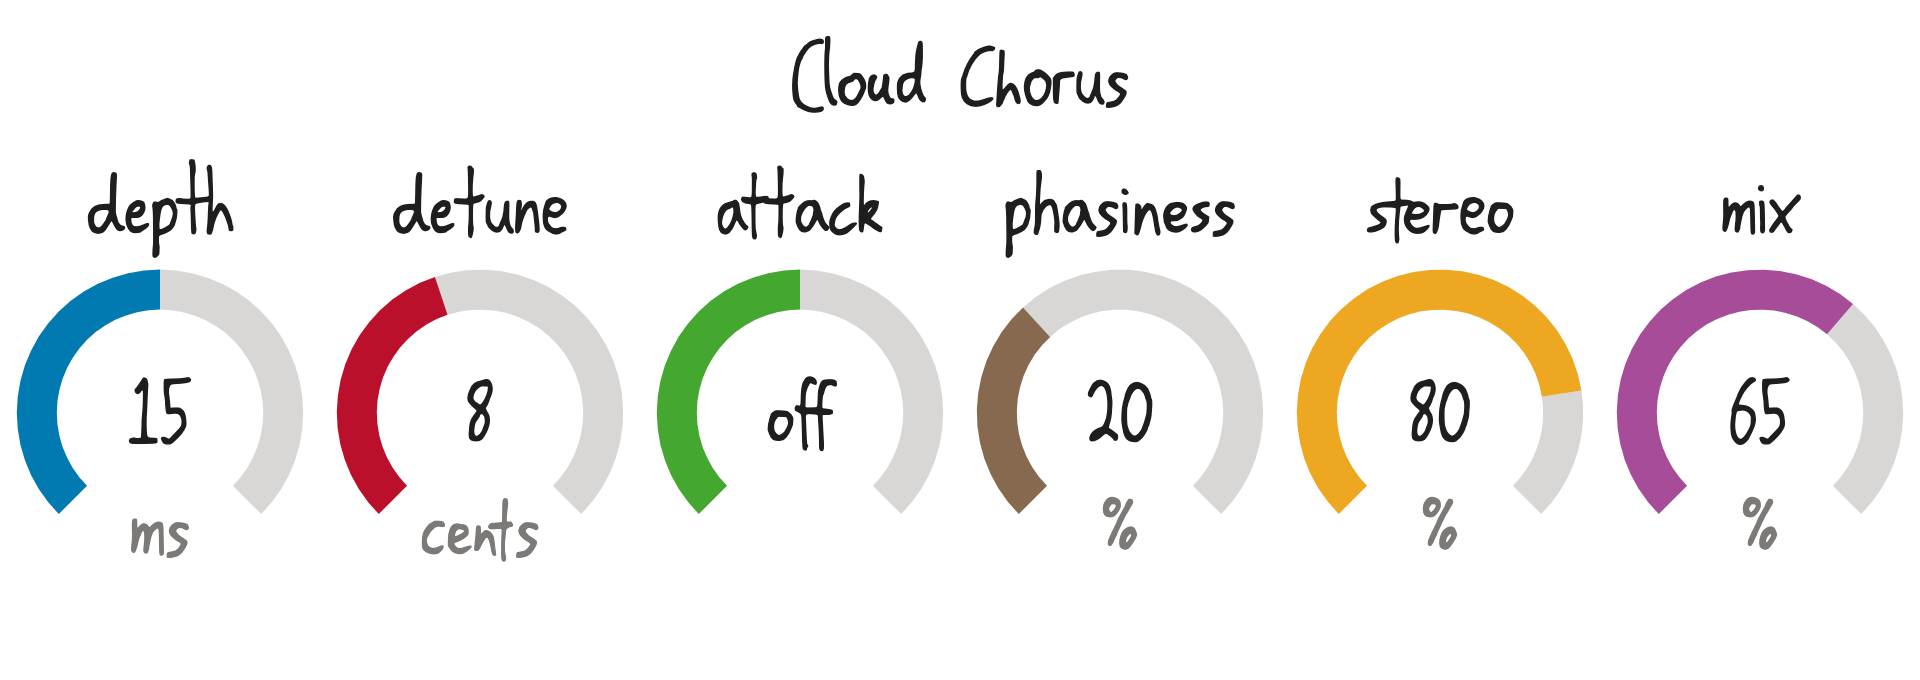 Cloud Chorus